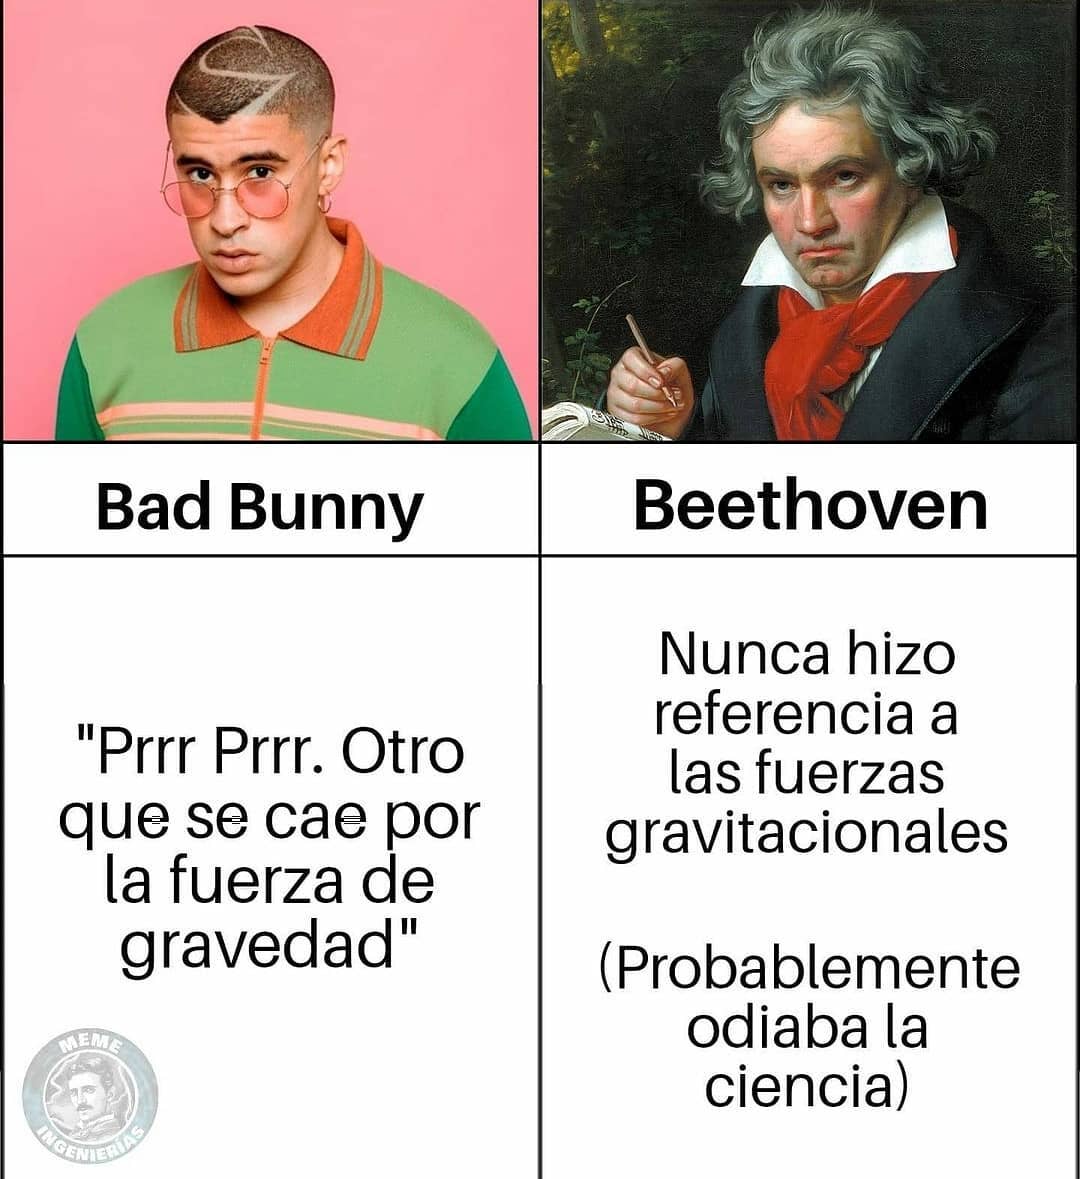 Bad Bunny "Prrr Prrr. Otro que se cae por la fuerza de gravedad".  Beethoven: Nunca hizo referencia a las fuerzas gravitacionales (Probablemente odiaba la ciencia)